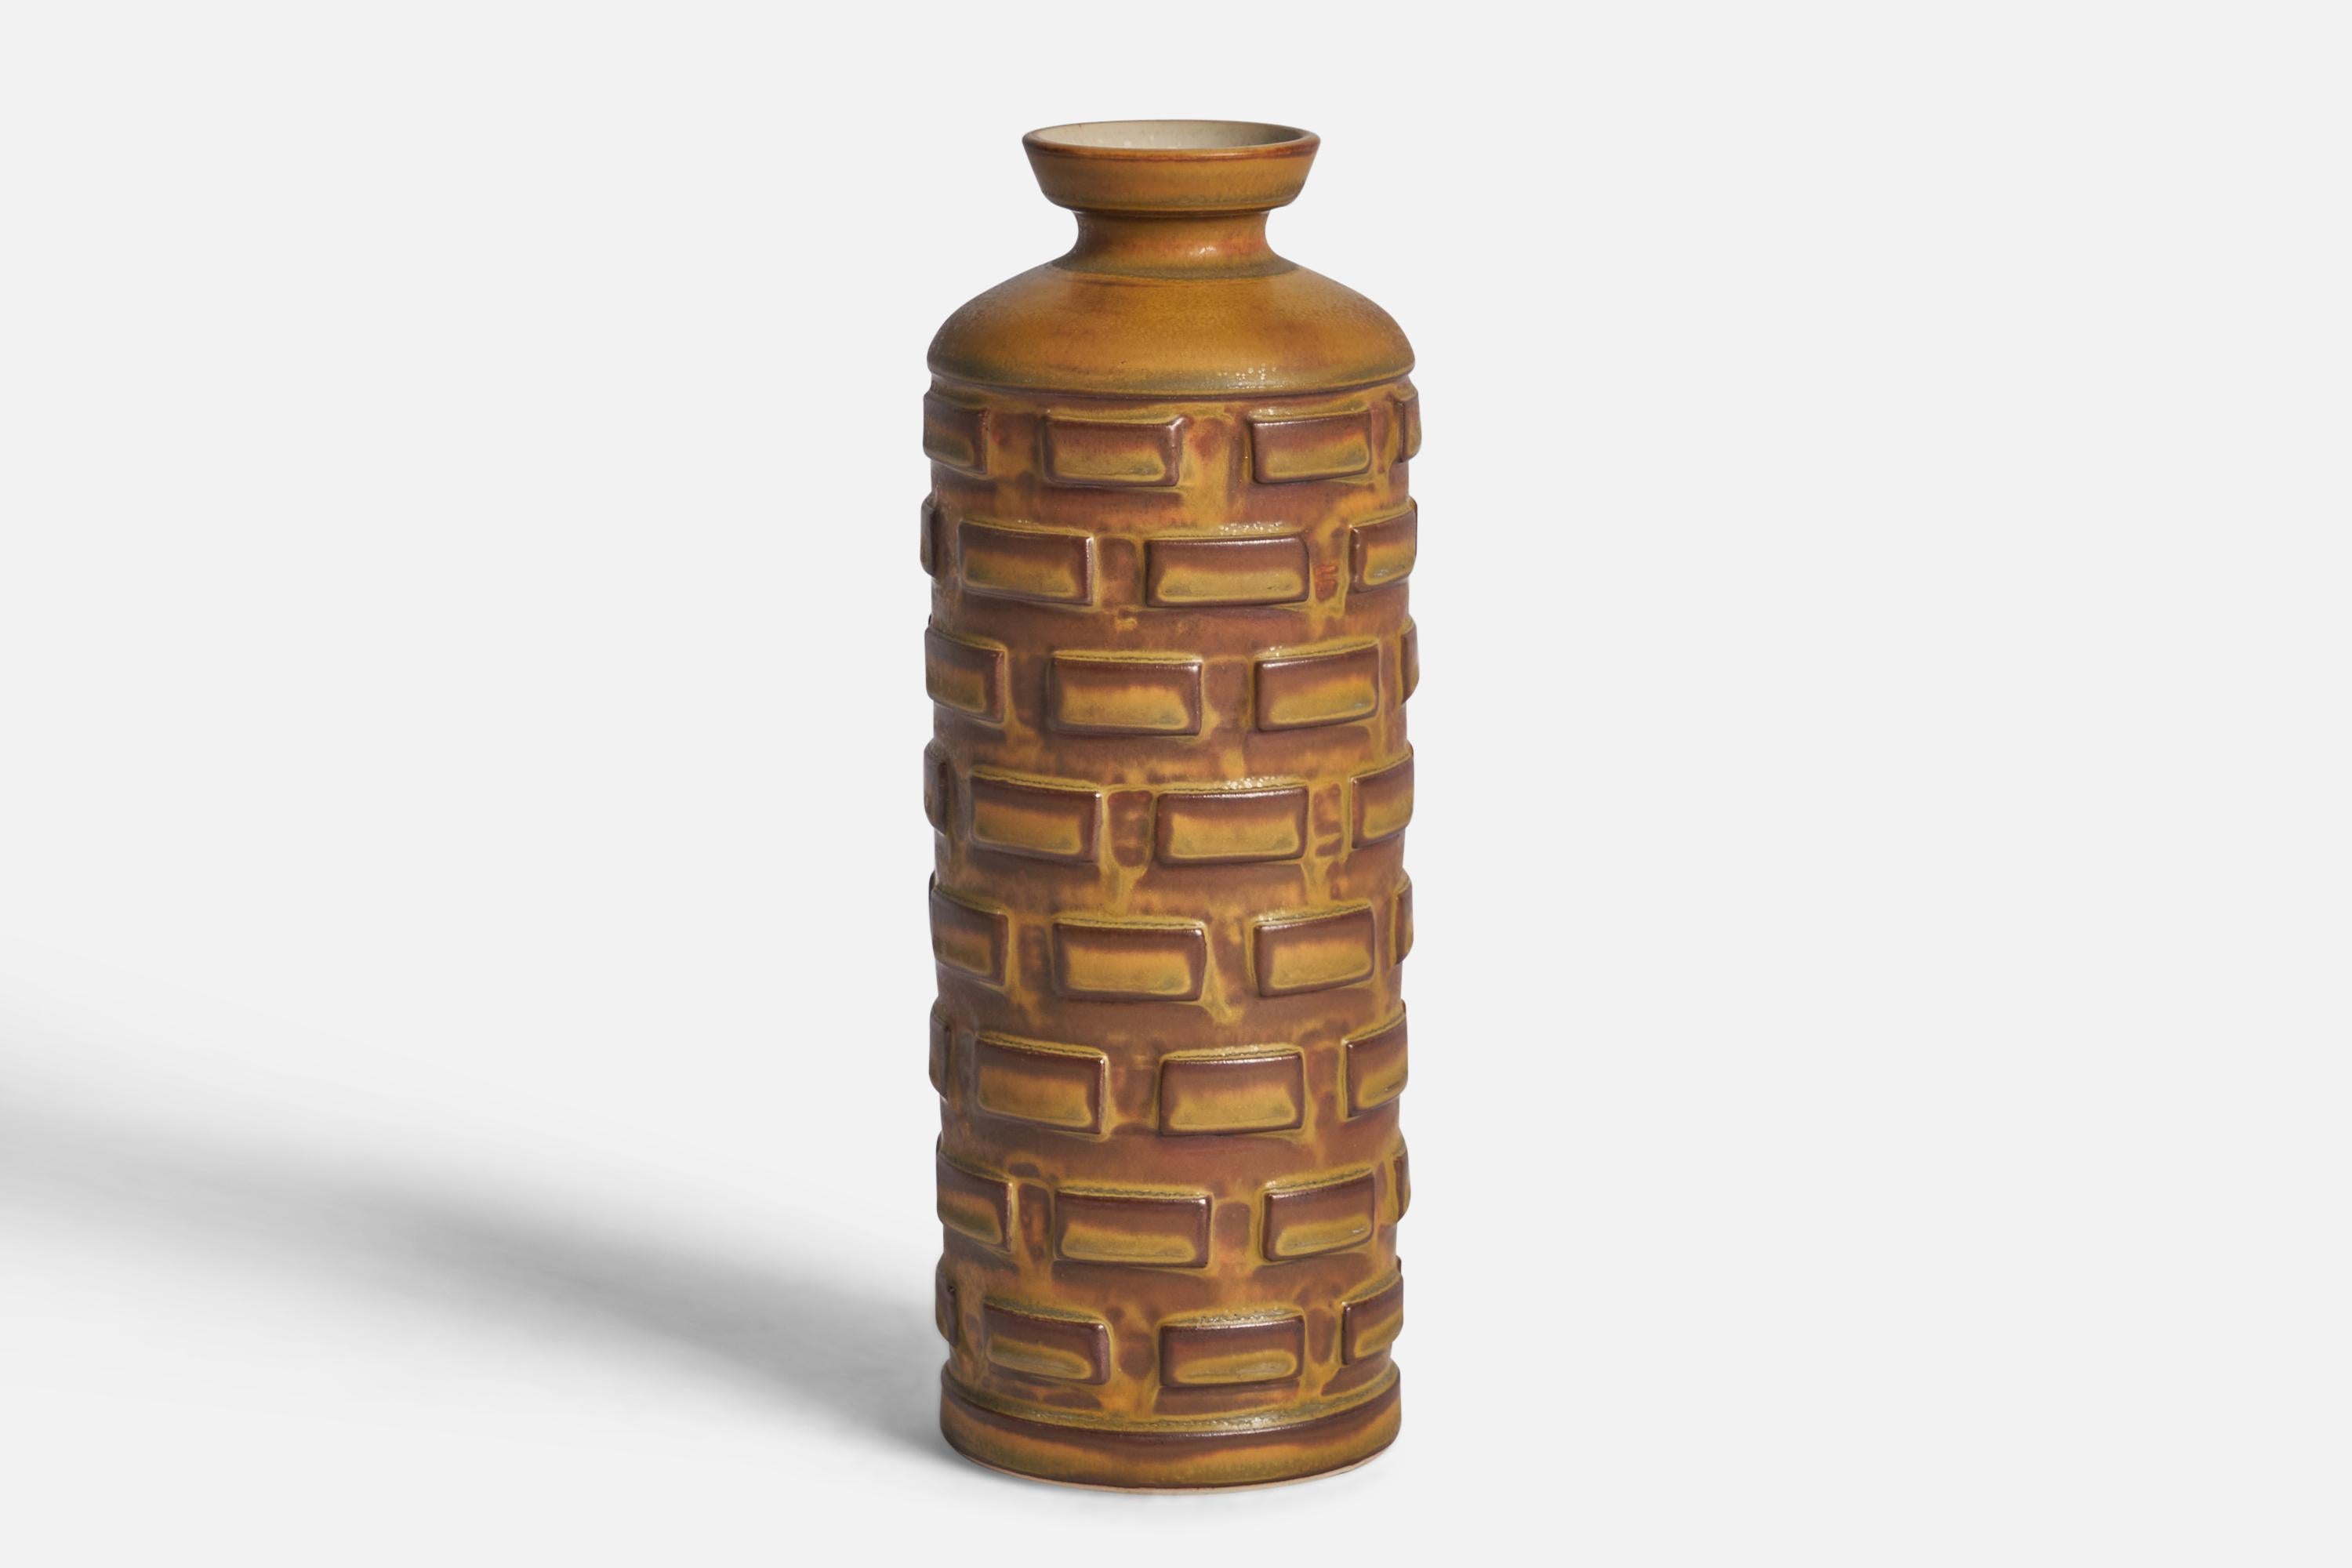 Vase aus braun glasiertem Steingut, entworfen und hergestellt von Munk Keramik, Enköping, Schweden, 1960er Jahre.

Unterschrift 